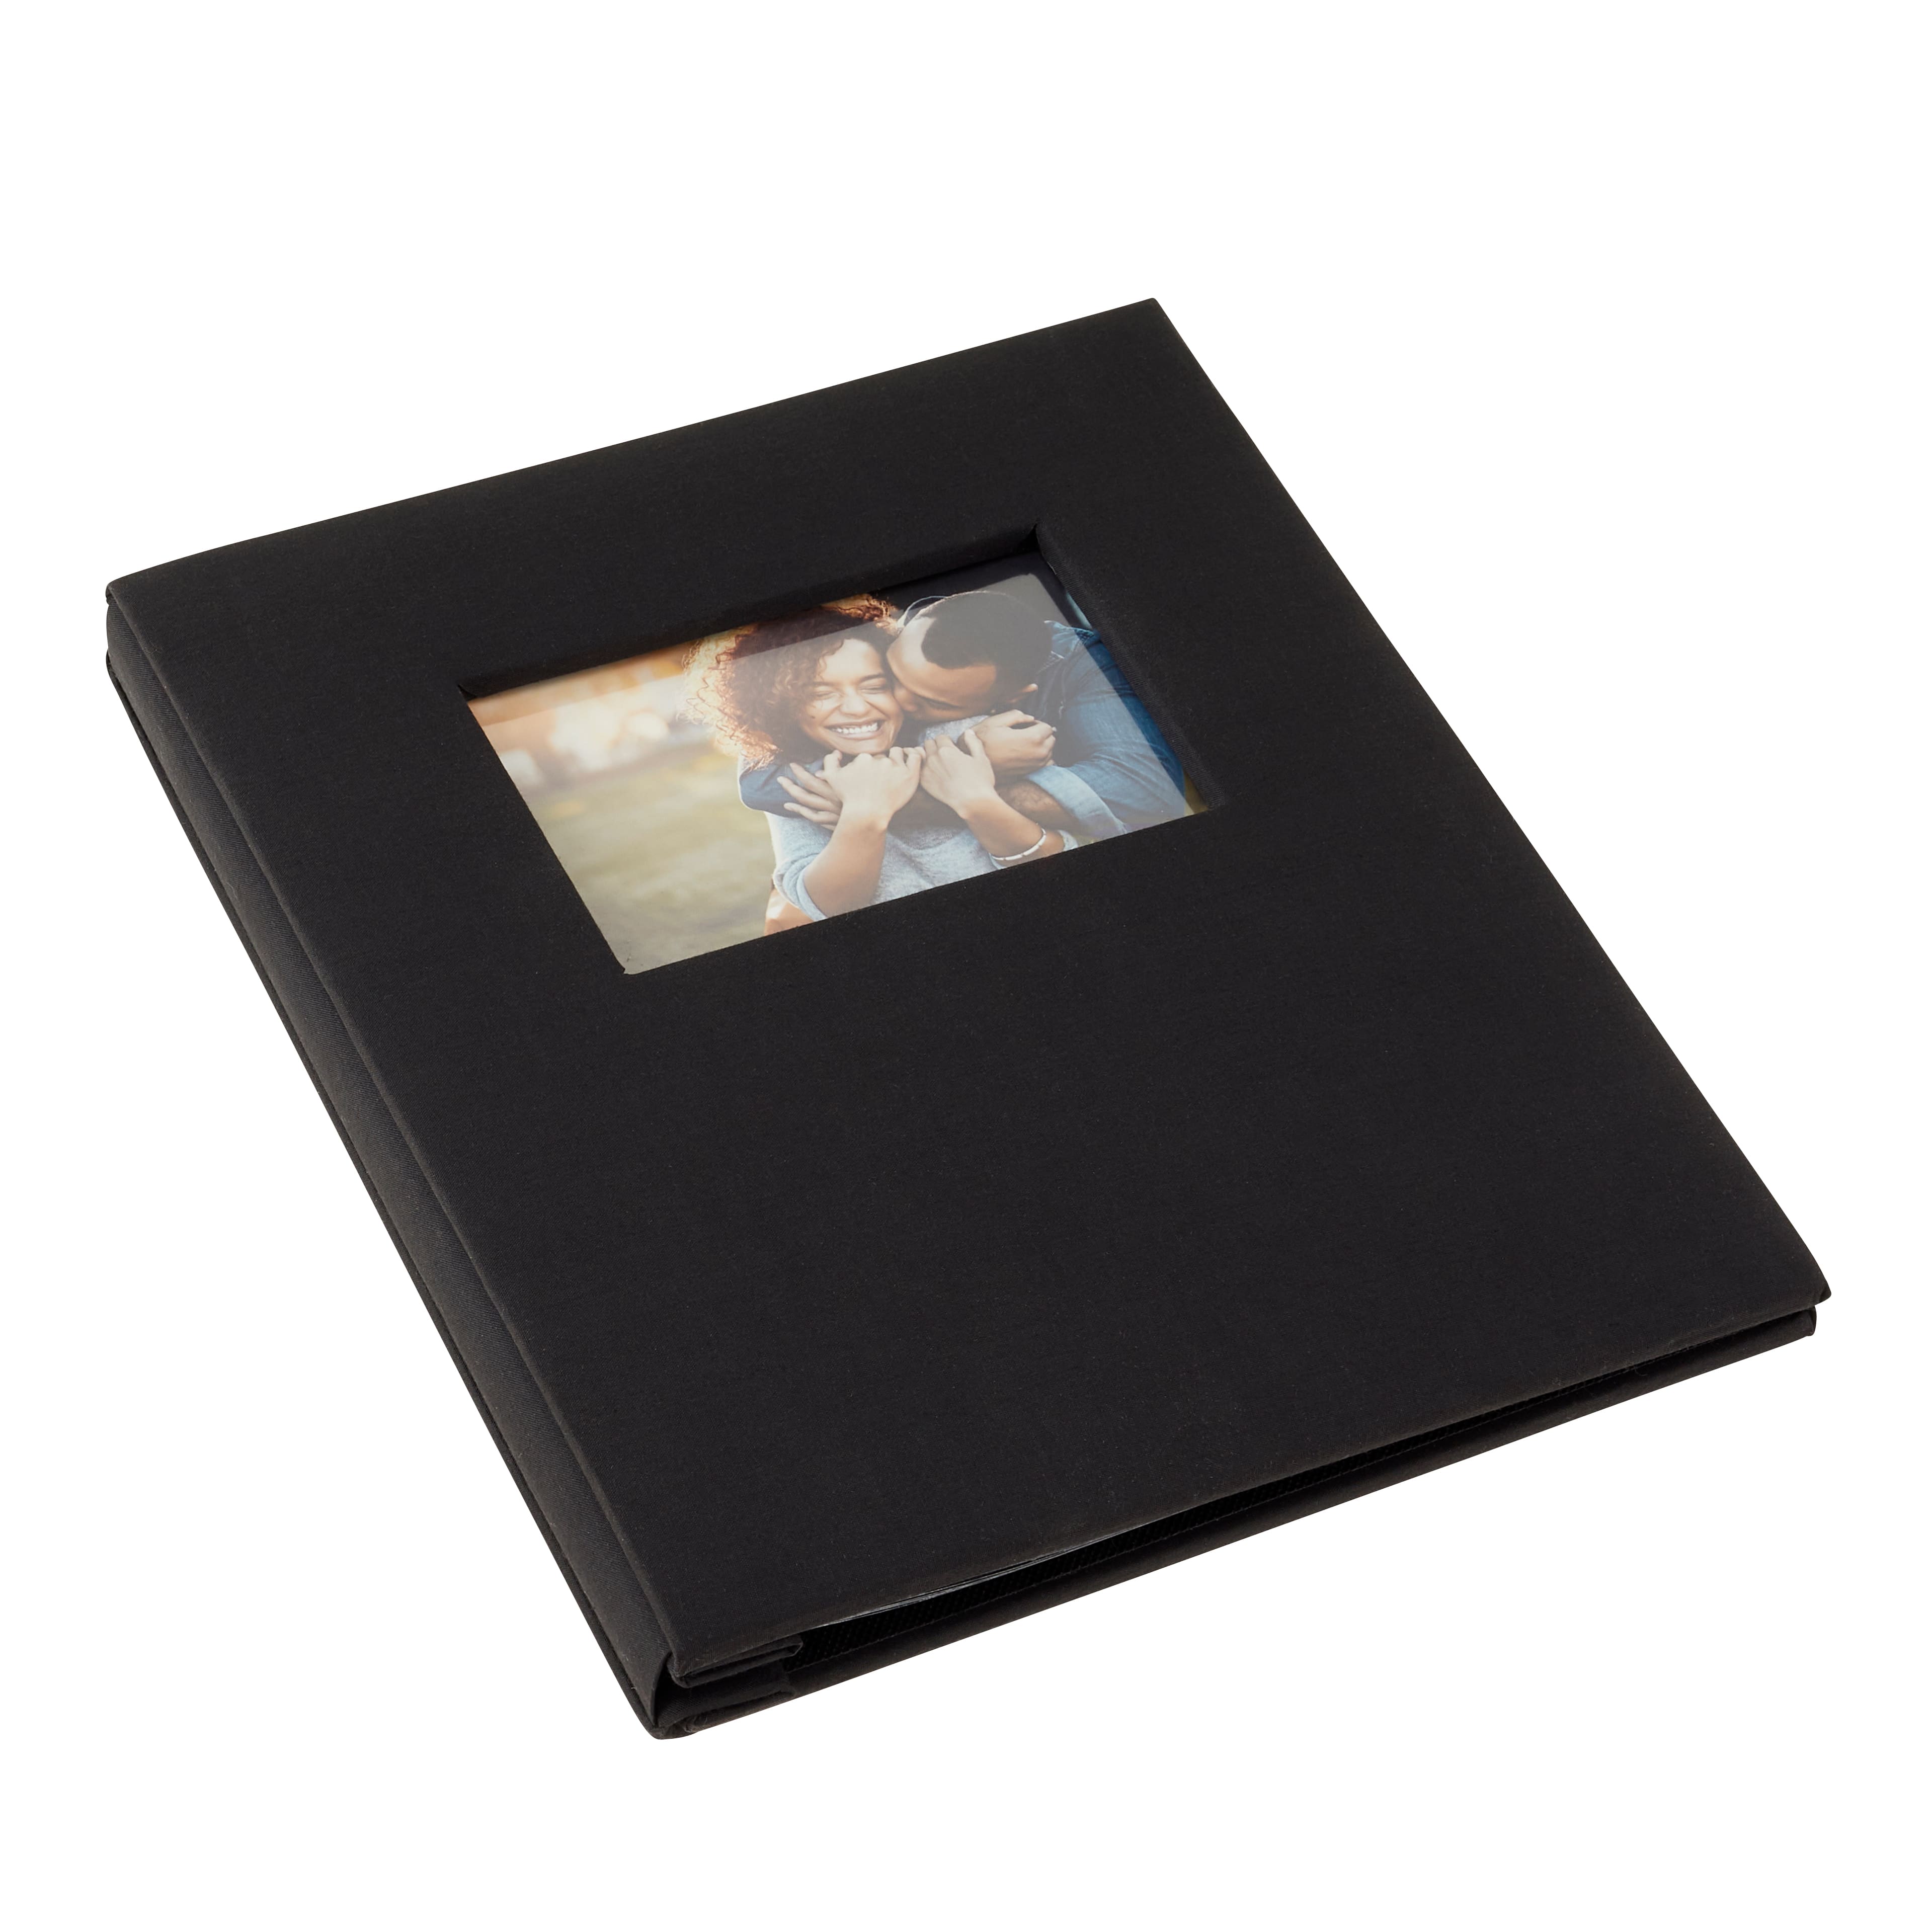 Gray Lane 8 x 12 Black Scrapbook Album, Size: 12x8x1